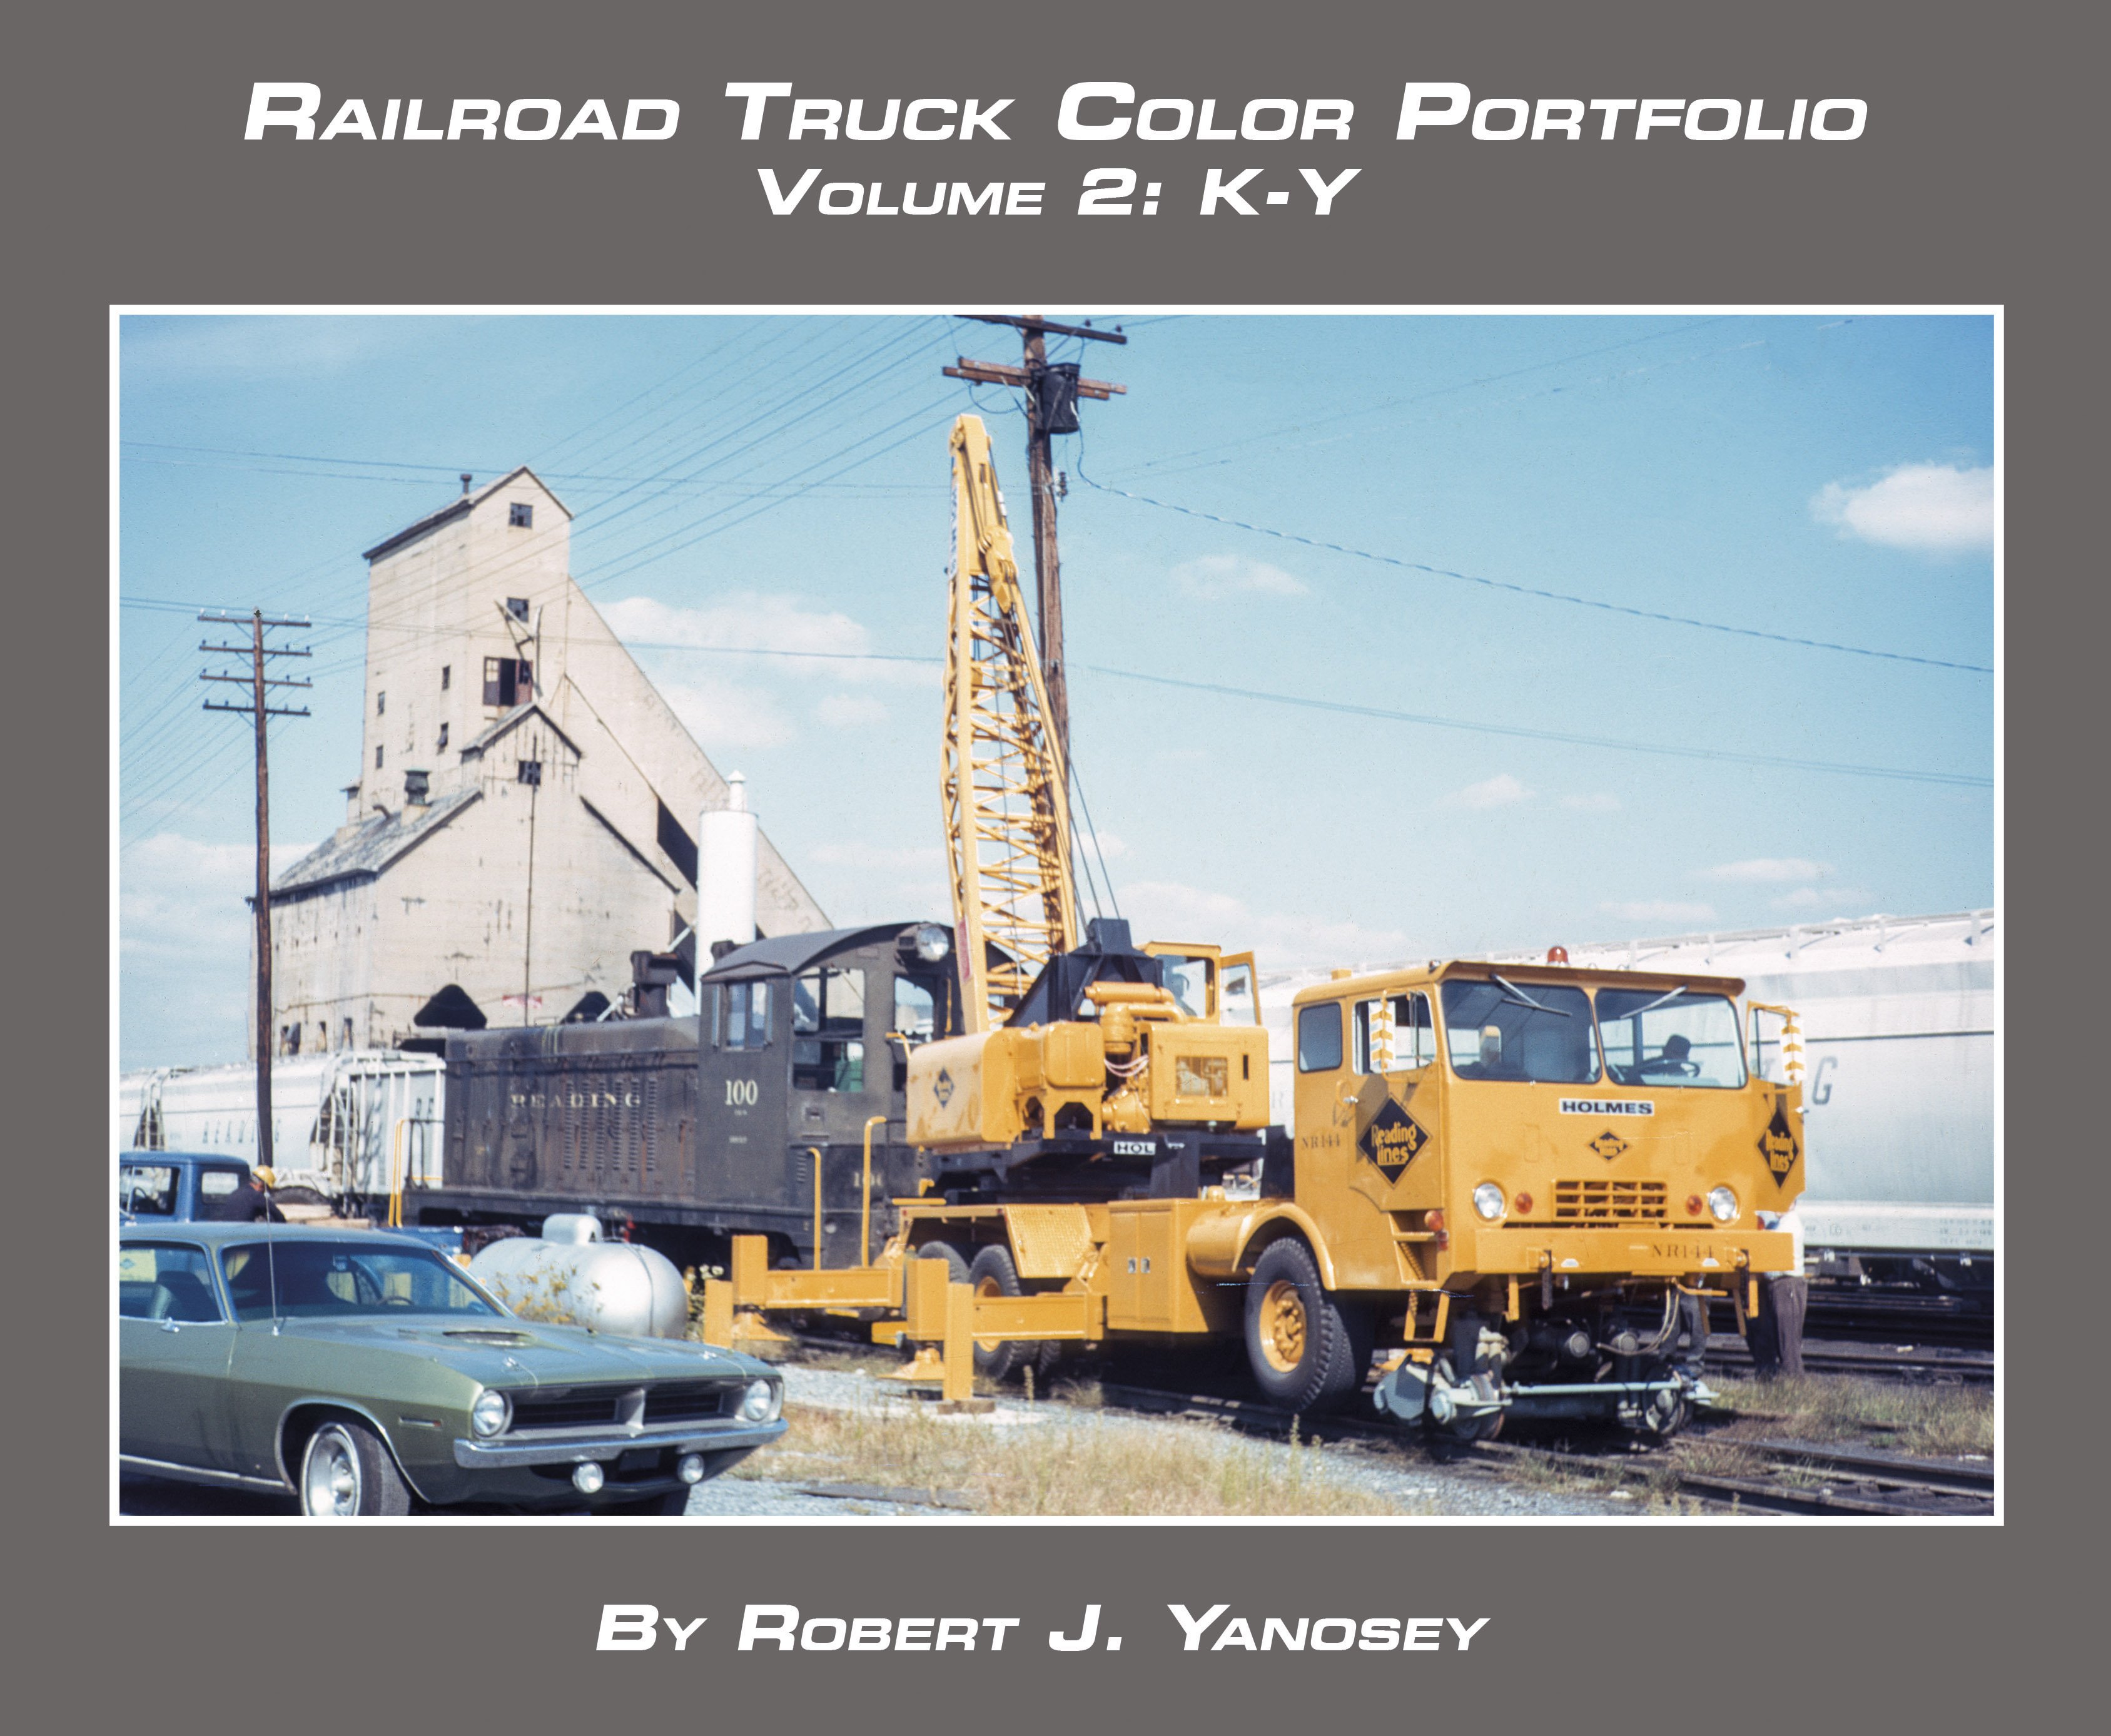 Morning Sun Books 'Soft Cover' 7553 Railroad Truck Color Portfolio Volume 2: K-Y